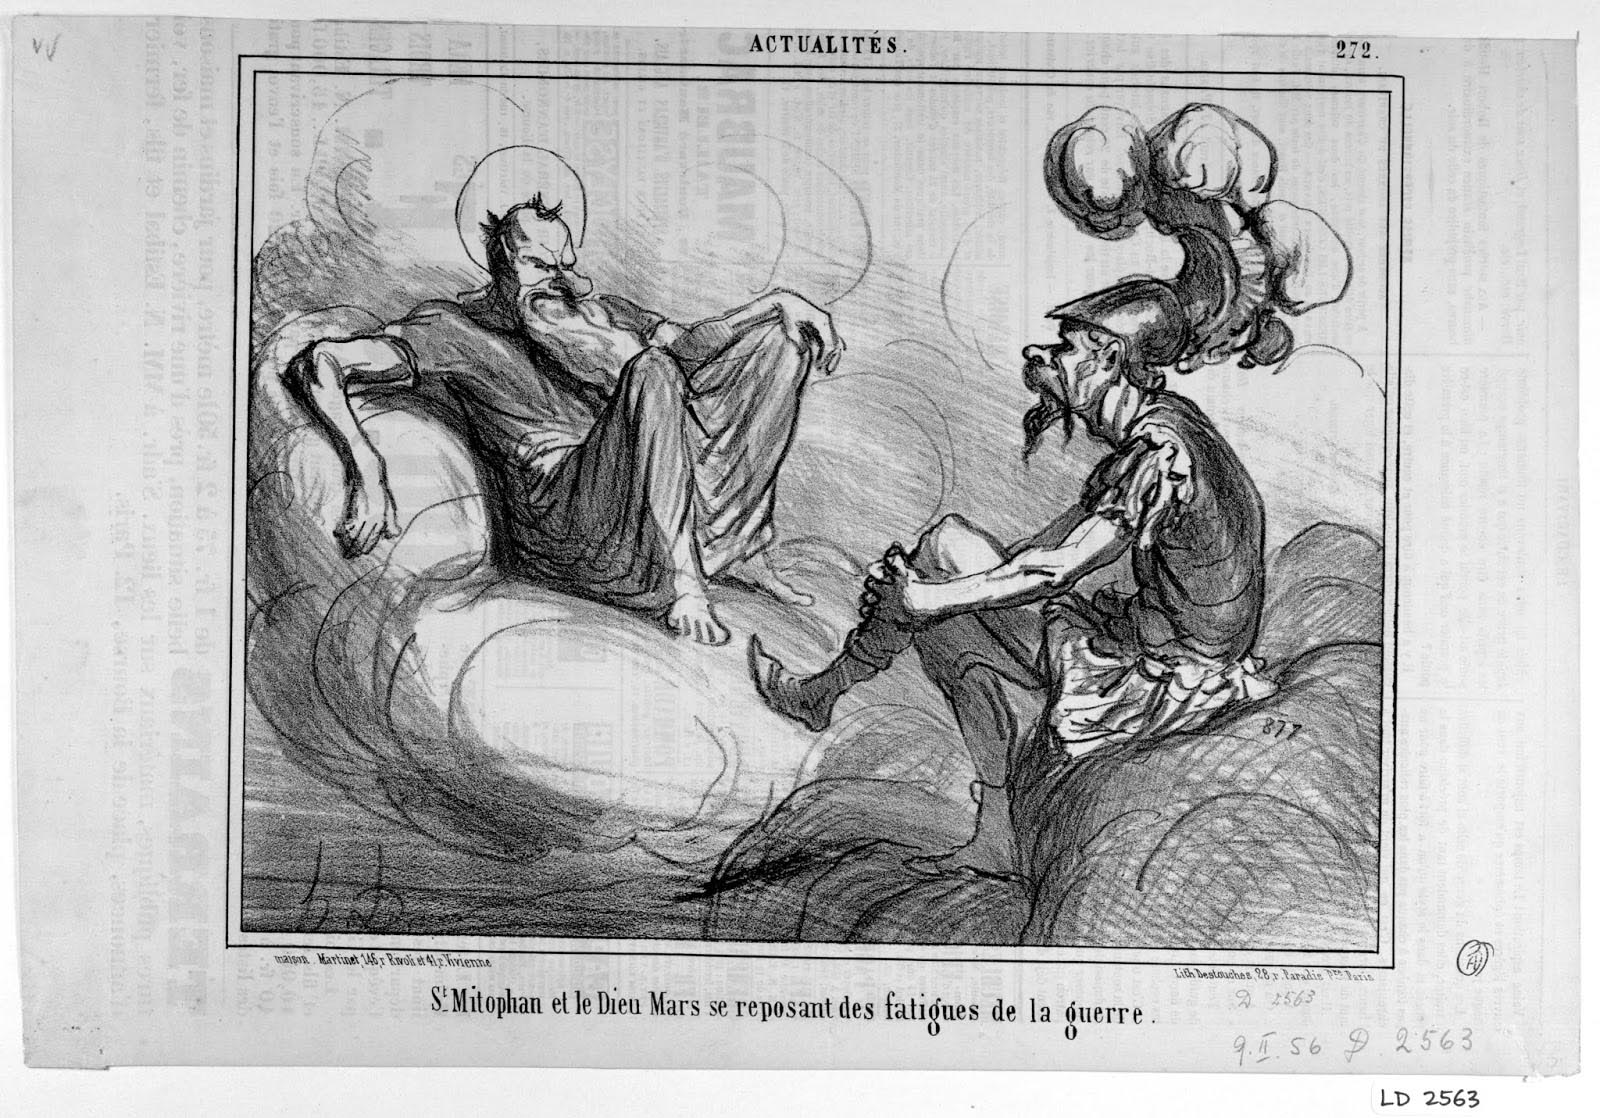 Honoré Daumier. Actualités, no. 272. Le Charivari. February 9, 1856. LD 2563